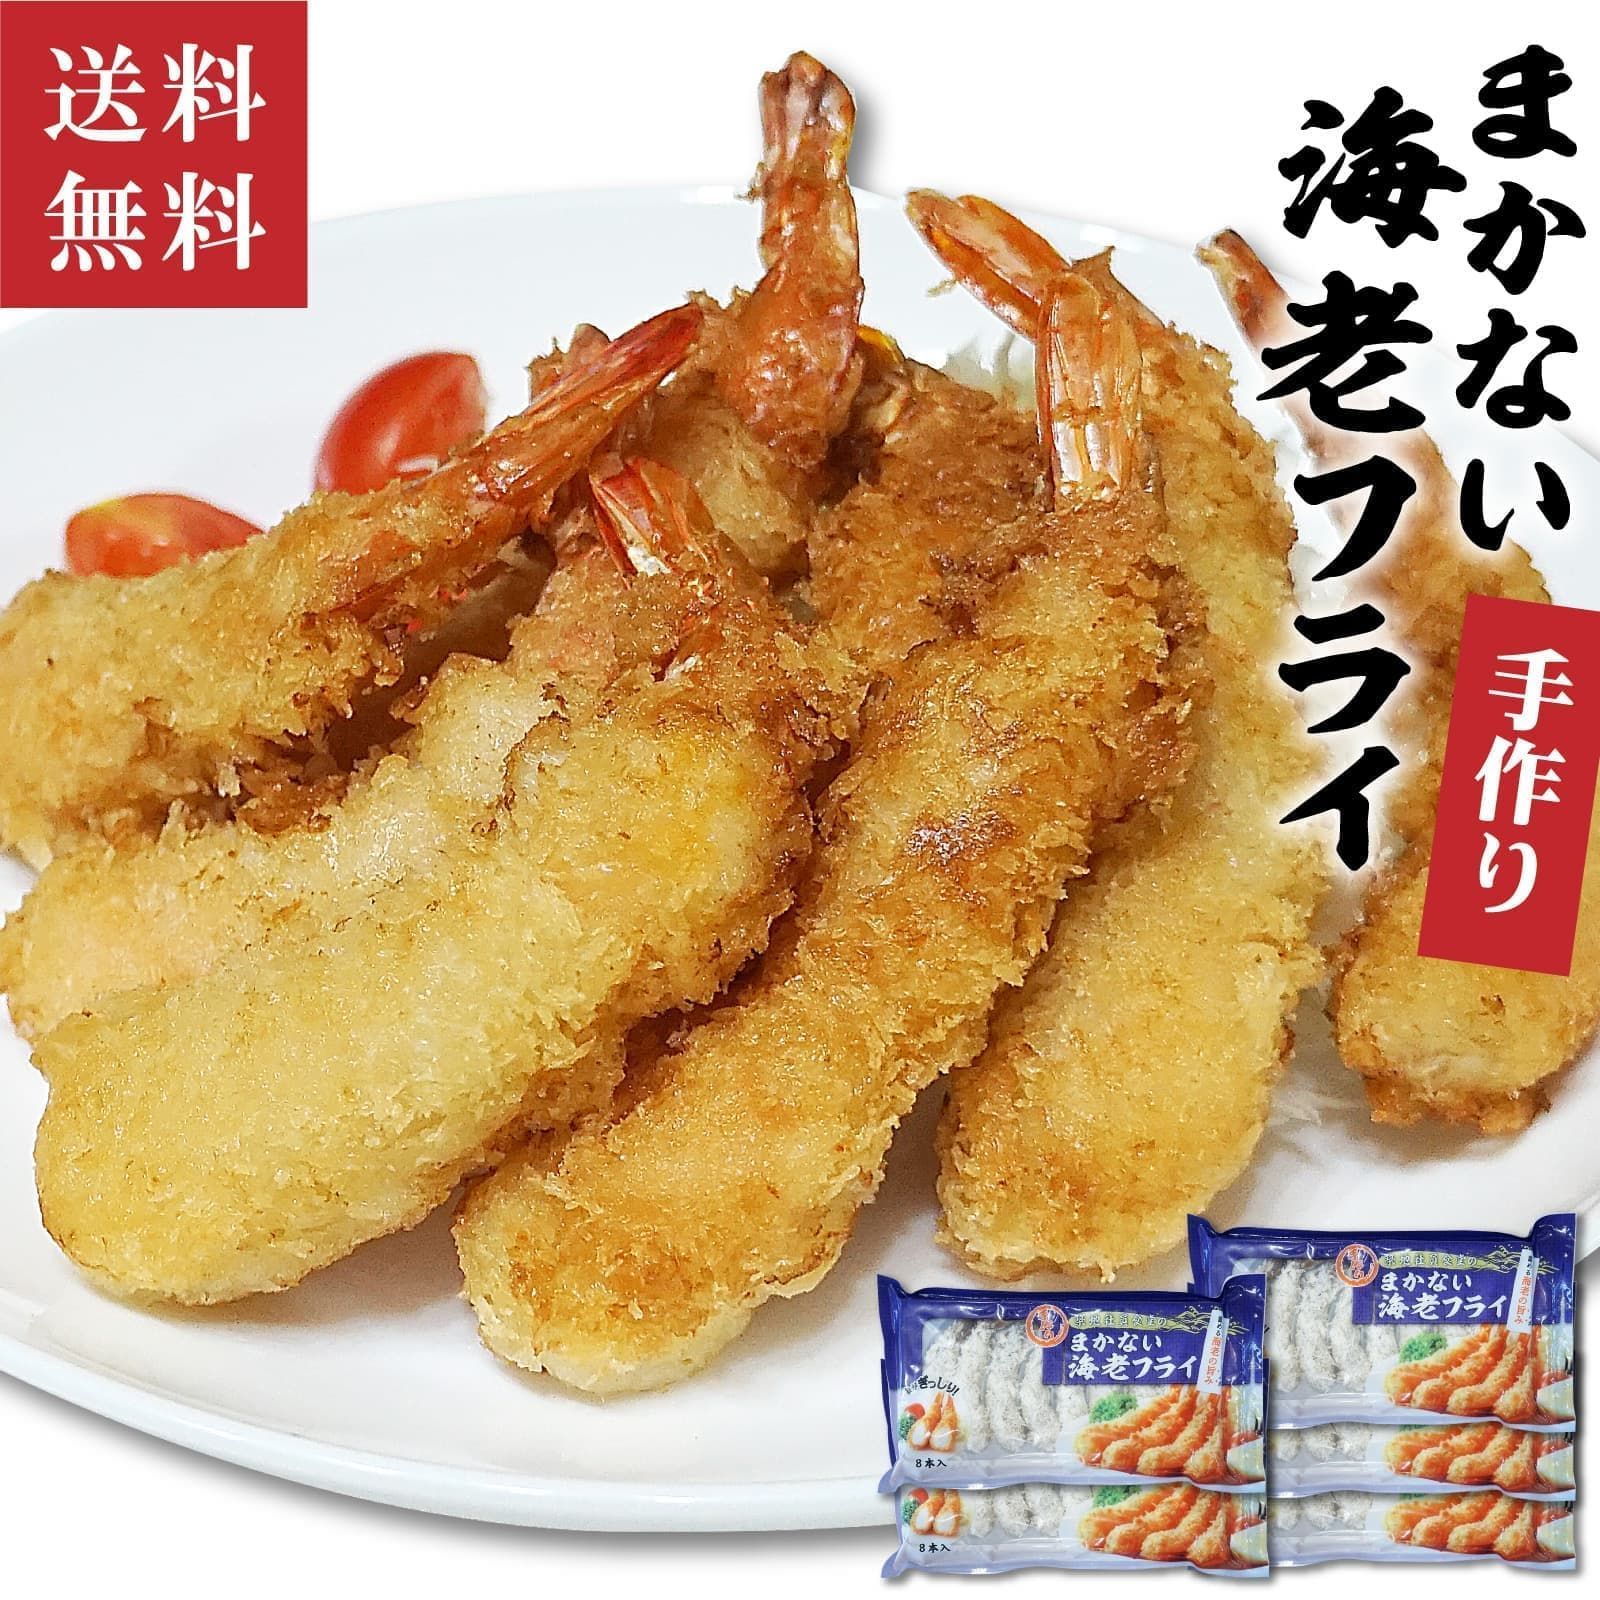 惣菜 エビフライ 192g(8尾)×5袋 冷凍食品 お弁当 おかず えび フレッシュ 海老フライ 揚げ物 - メルカリ